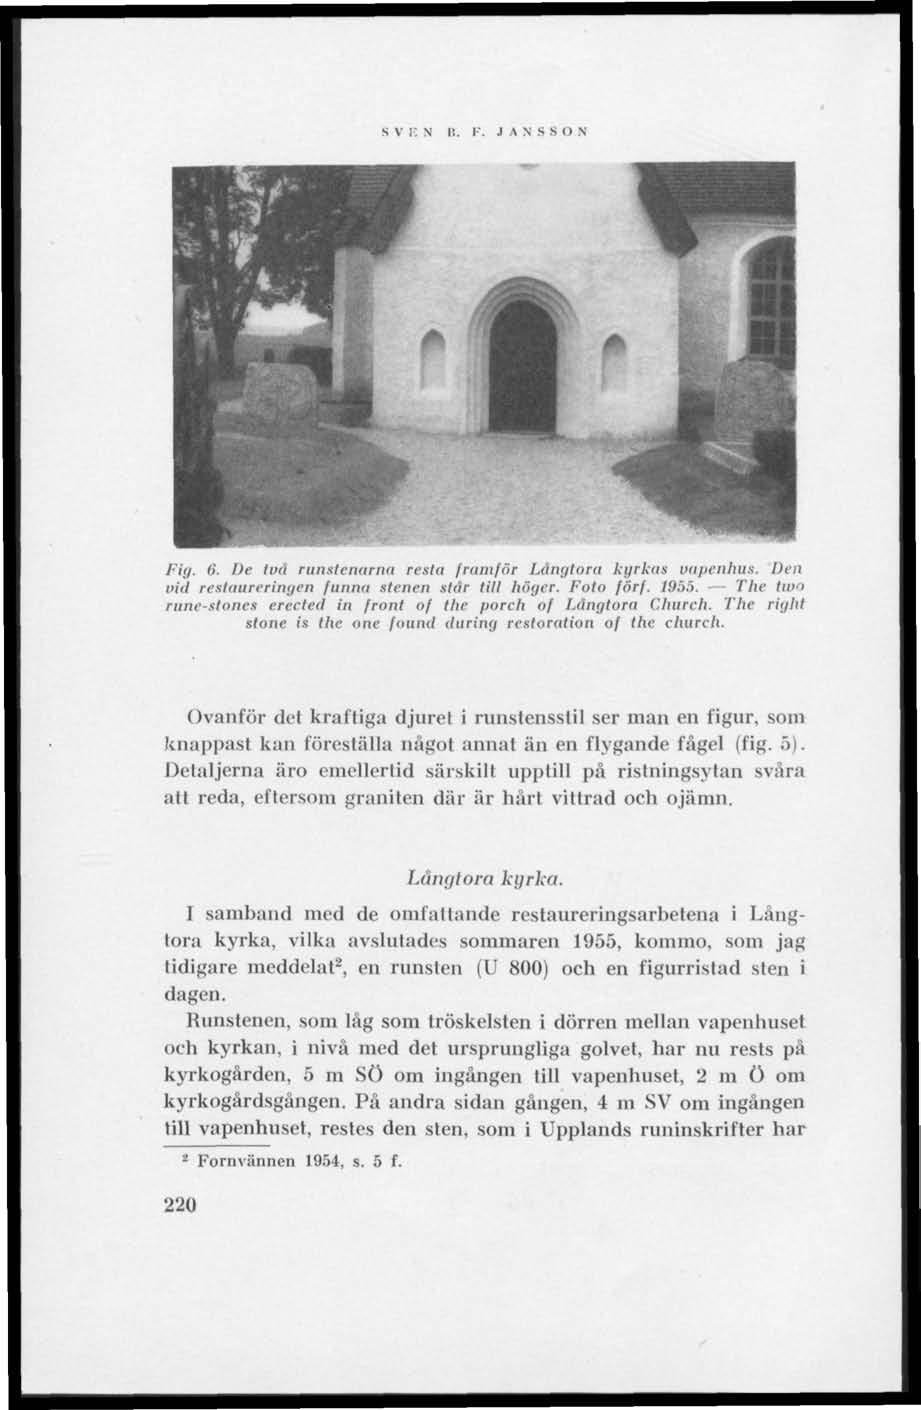 S V IC N 11. F. J A N S S O N Pig. 6. De två runstenarna resta framför Ldngloru kyrka» vapenhus. Den vid restaureringen funna stenen står till höger. Foto förf. 1955.